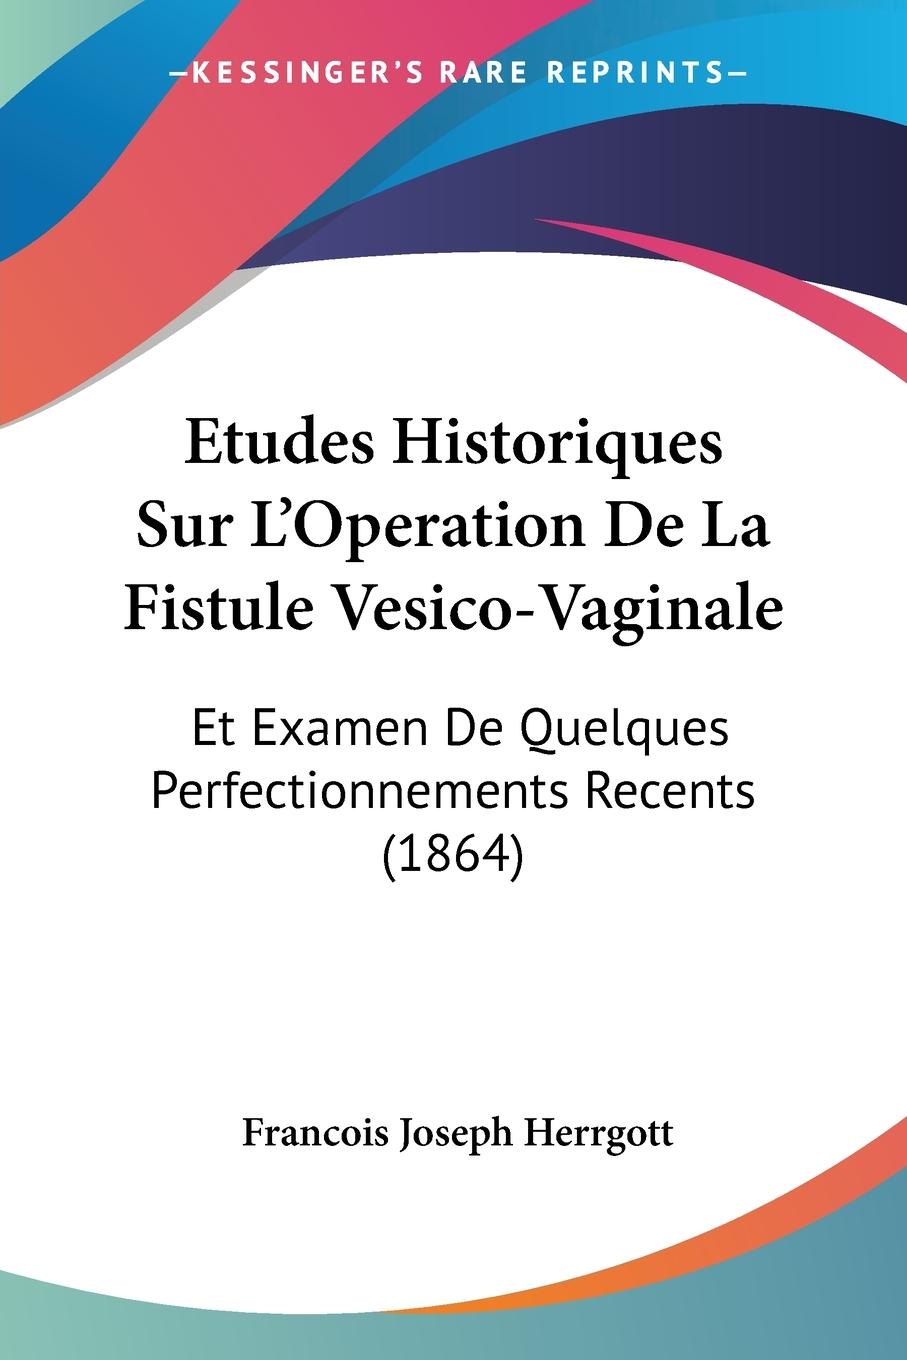 Etudes Historiques Sur L Operation De La Fistule Vesico-Vaginale - Herrgott, Francois Joseph